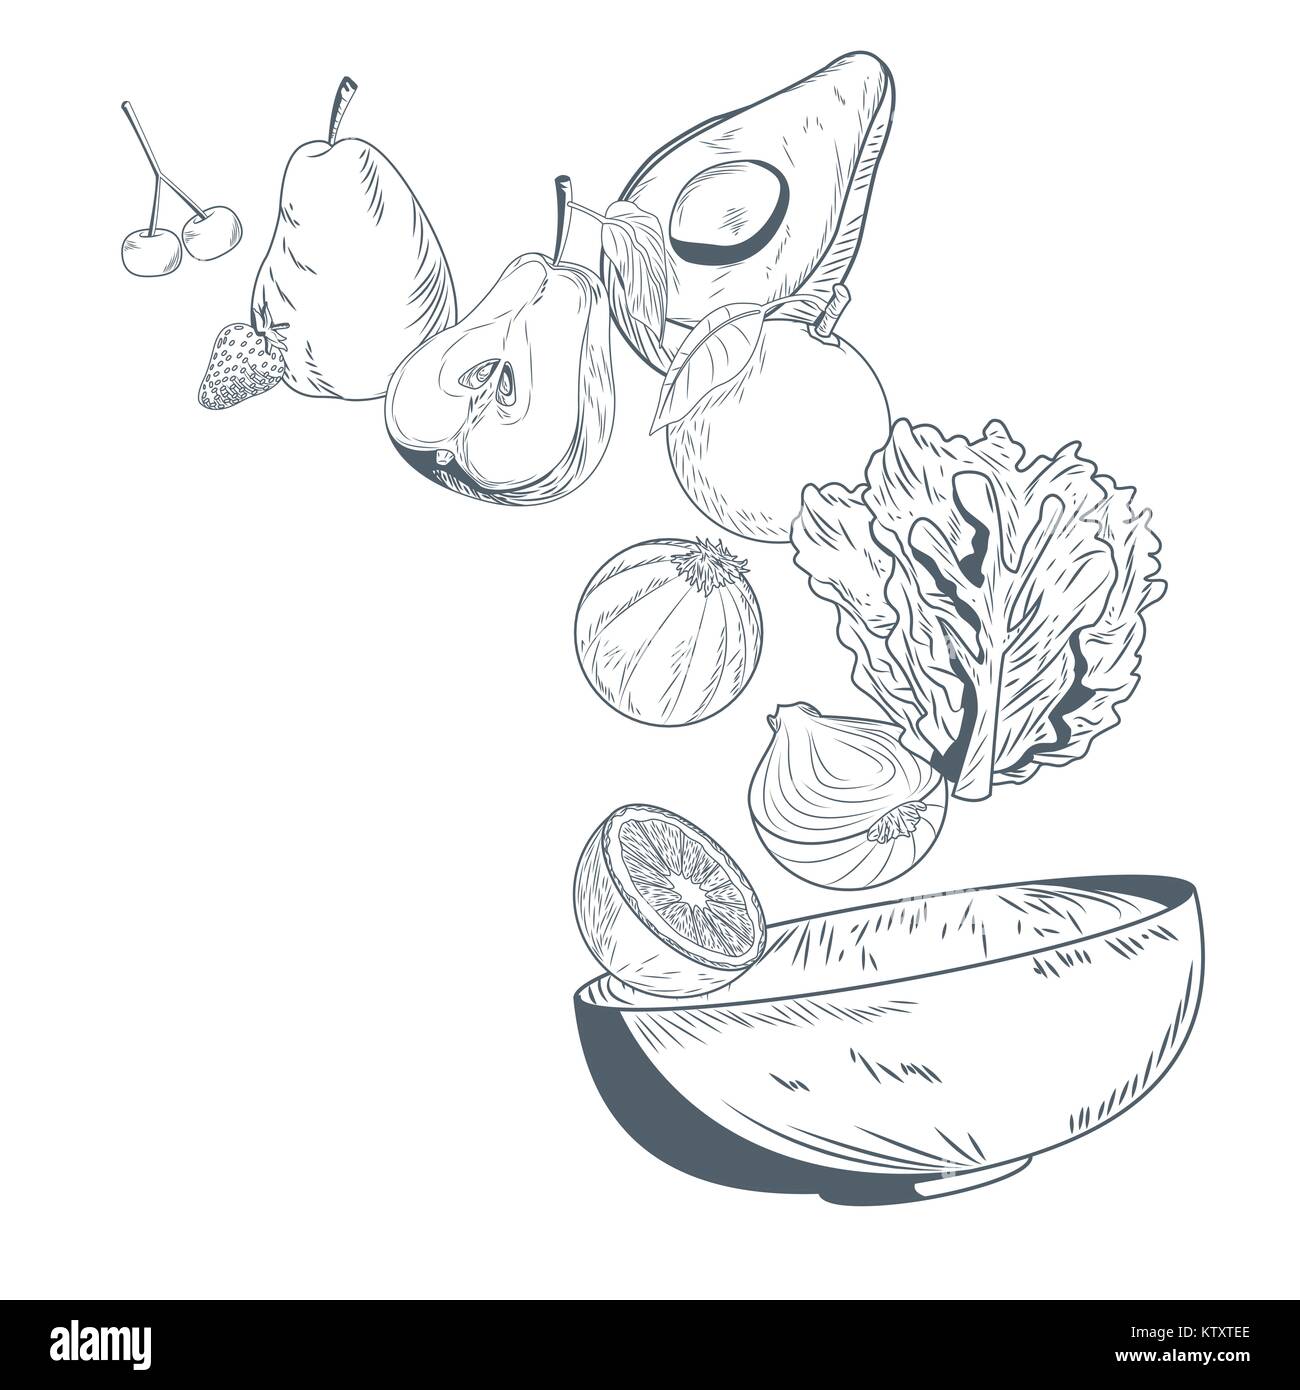 Gemüse und Früchte auf Schüssel Hand zeichnen Stock-Vektorgrafik - Alamy